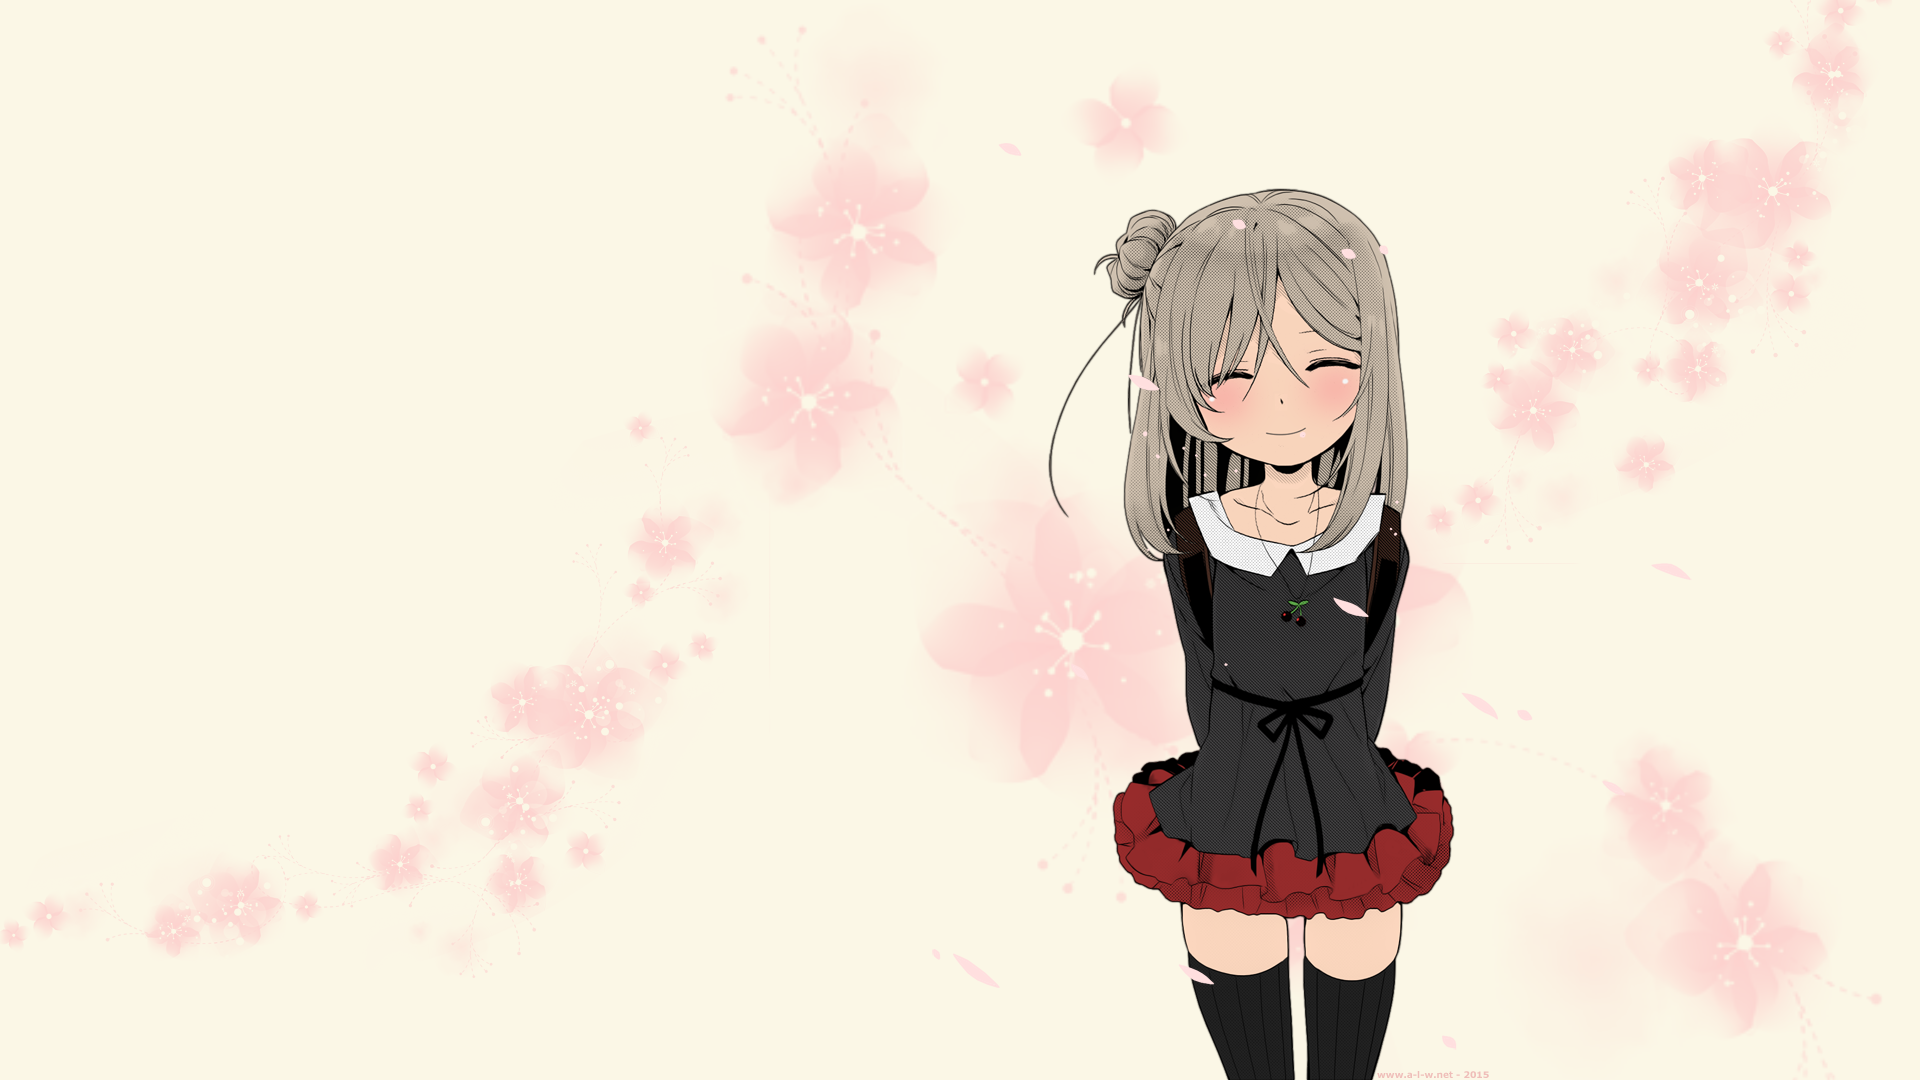 Anime 1920x1080 anime long hair miniskirt stockings cherry blossom anime girls smiling standing simple background